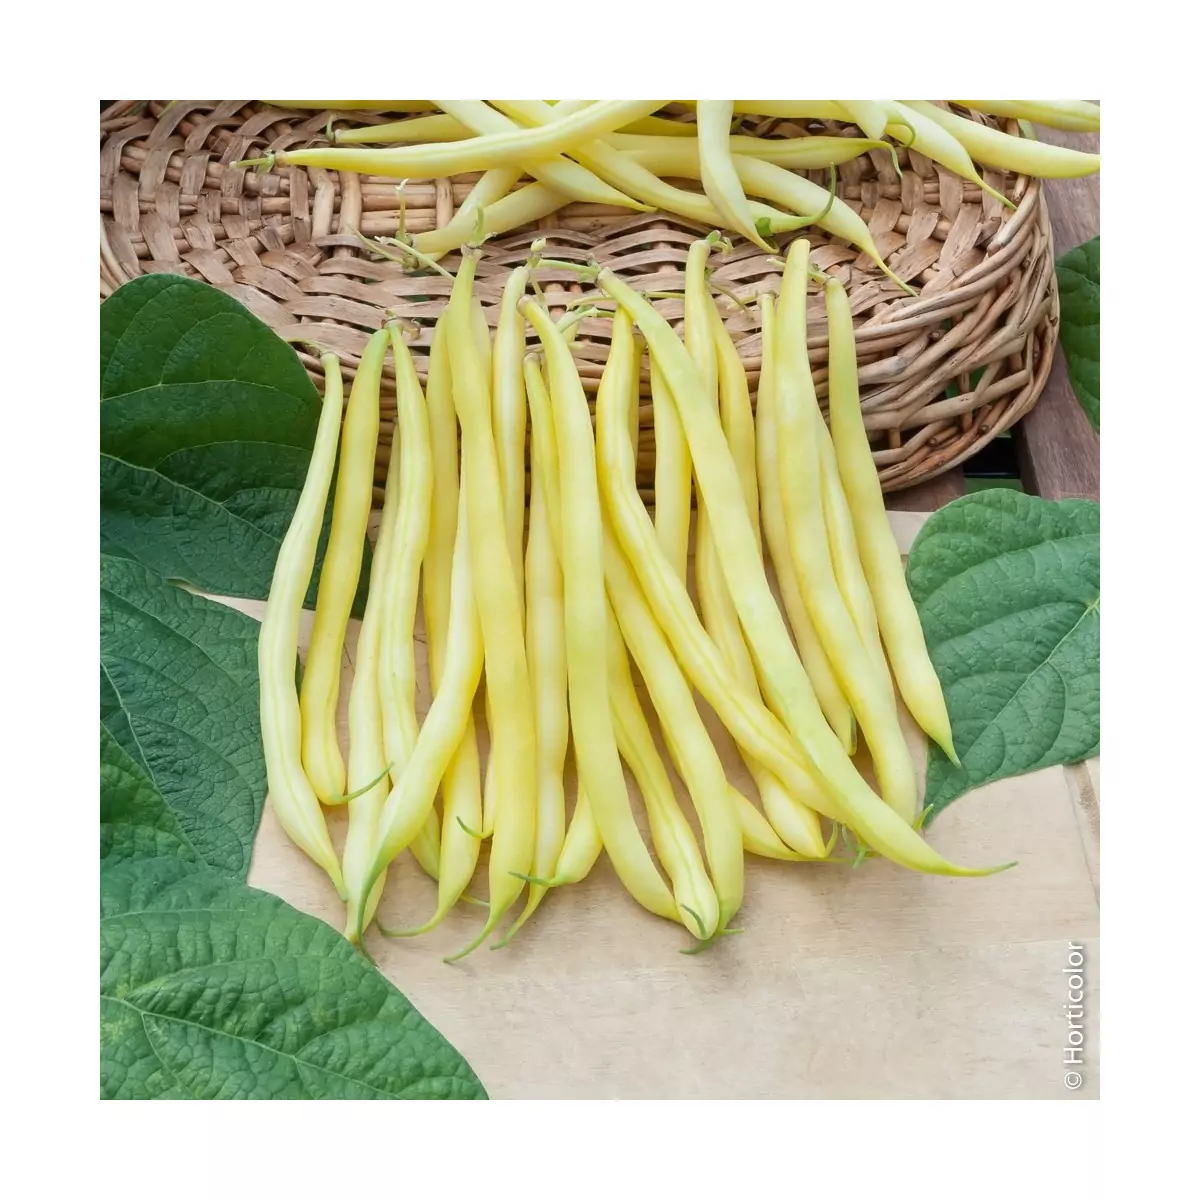 Rocquencourt Bean Seeds - 5 kg bag